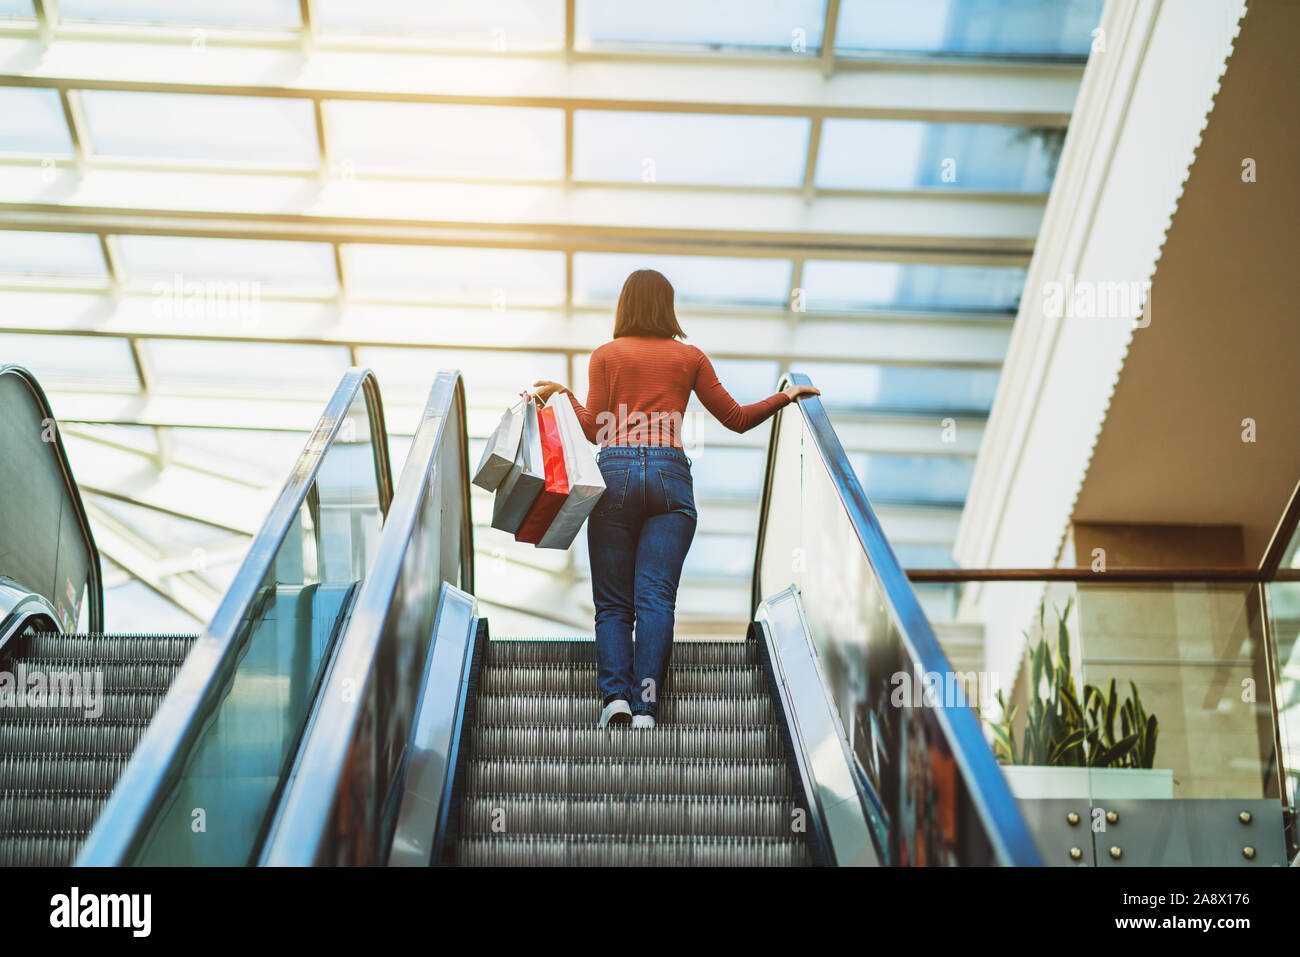 Junge Frau zu Fuß auf der Rolltreppe in einem Einkaufszentrum und Shopping. Stockfoto